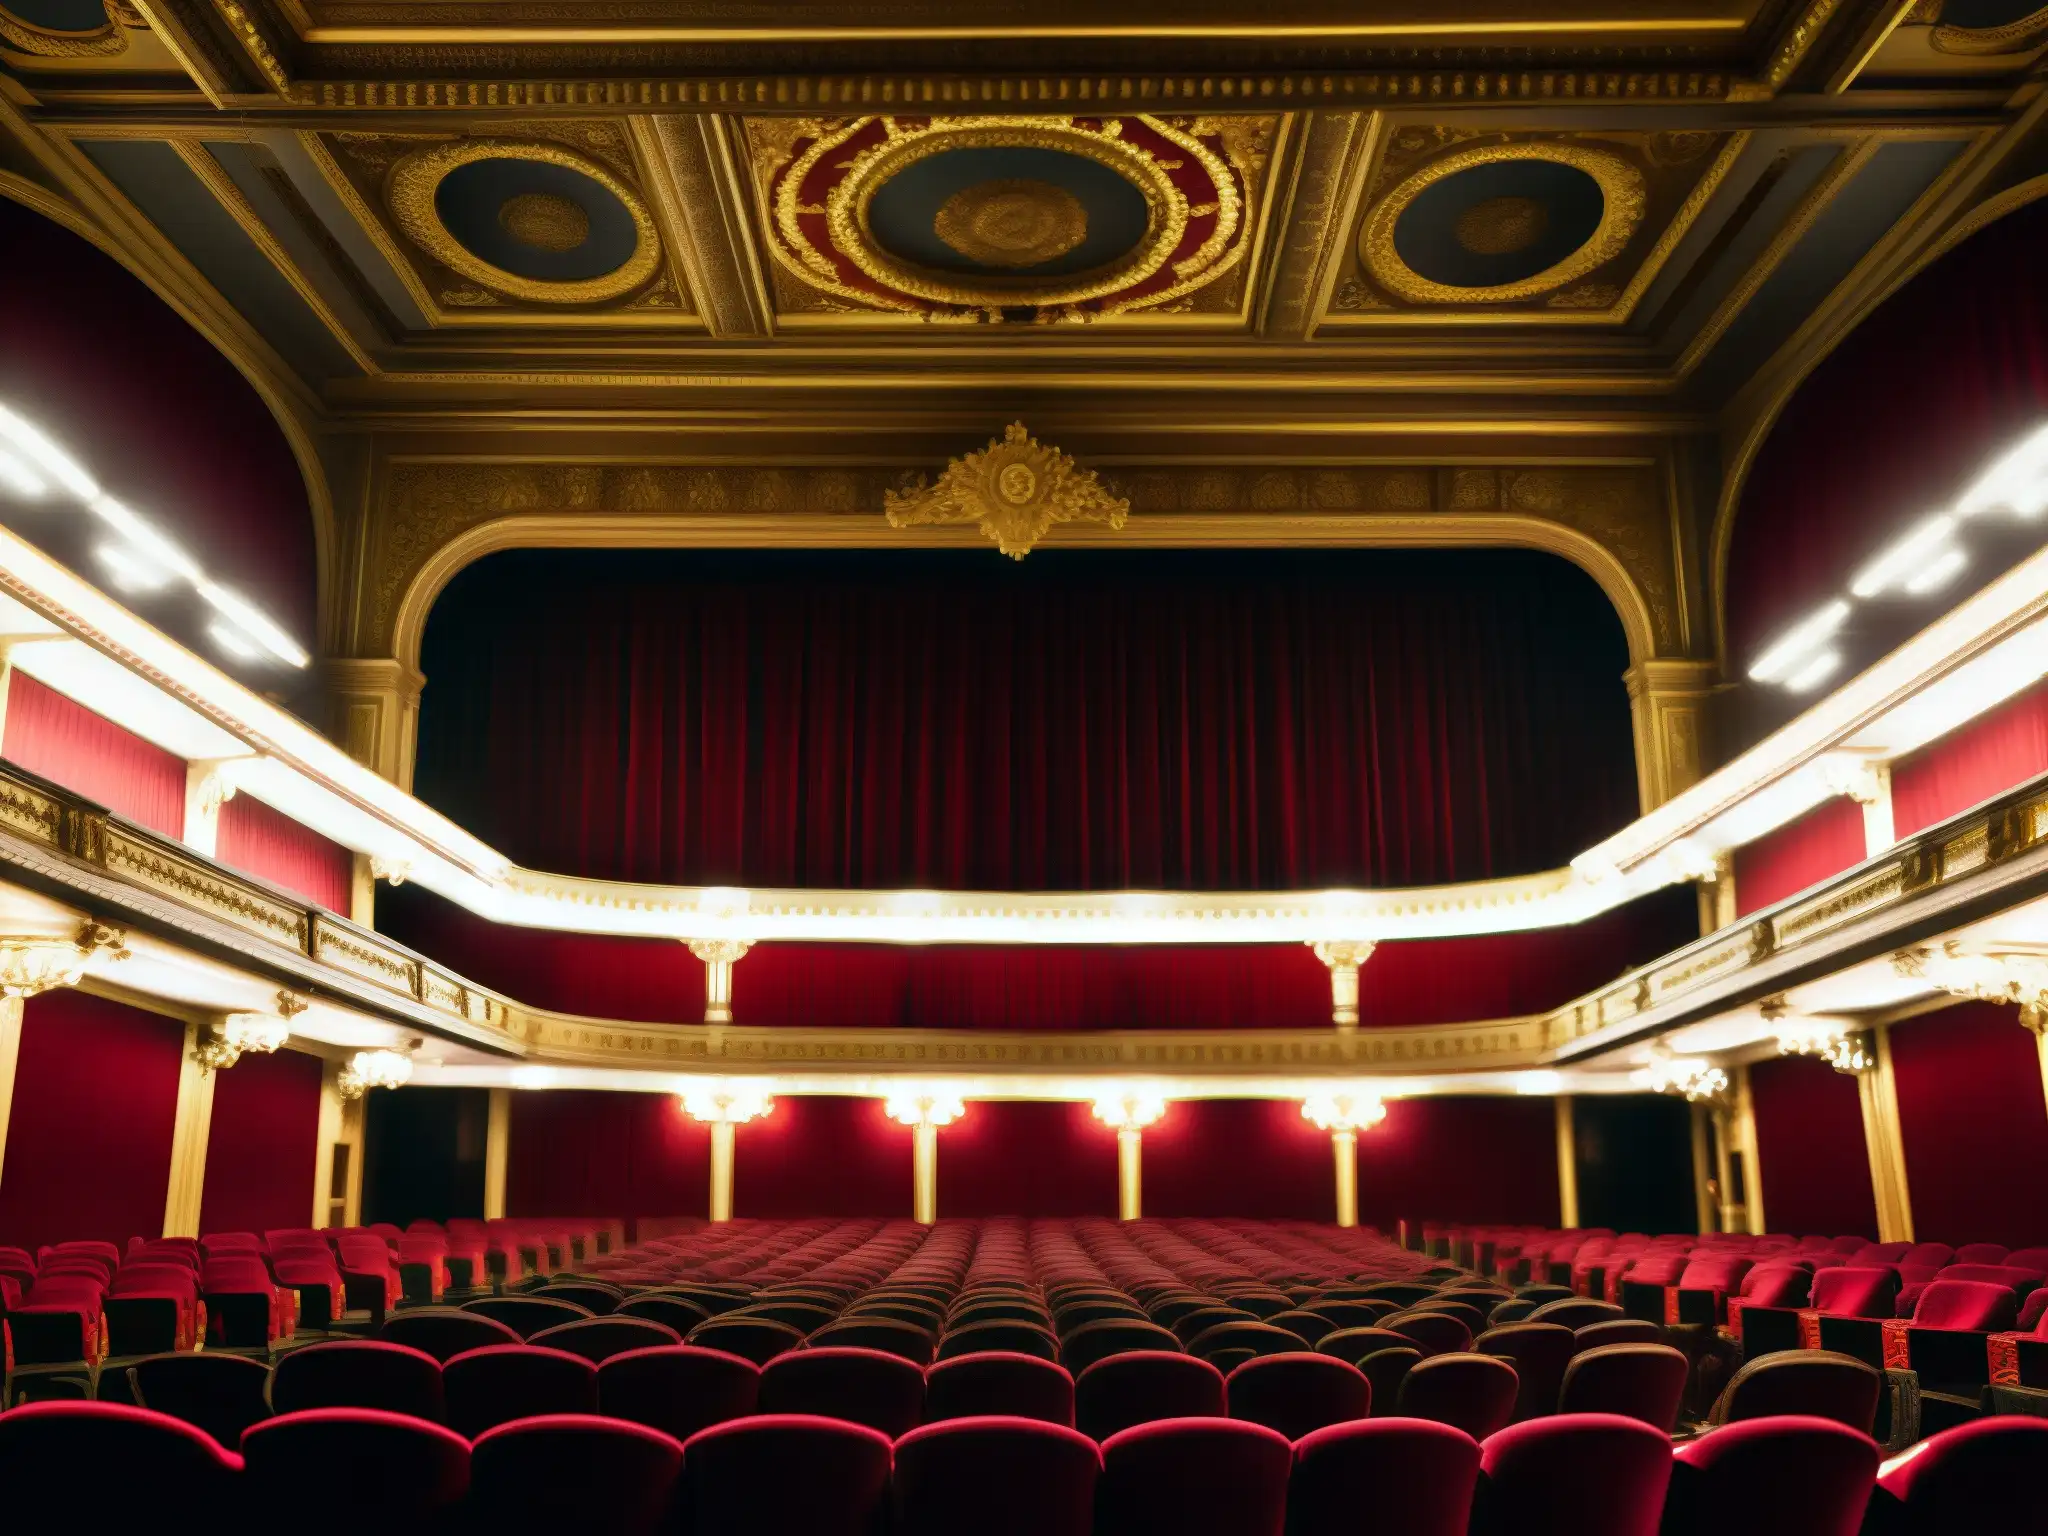 Teatro de Calcuta espectáculo sobrenatural: Imponente sala teatral con detalles arquitectónicos, cortinas de terciopelo rojo y antiguos candelabros